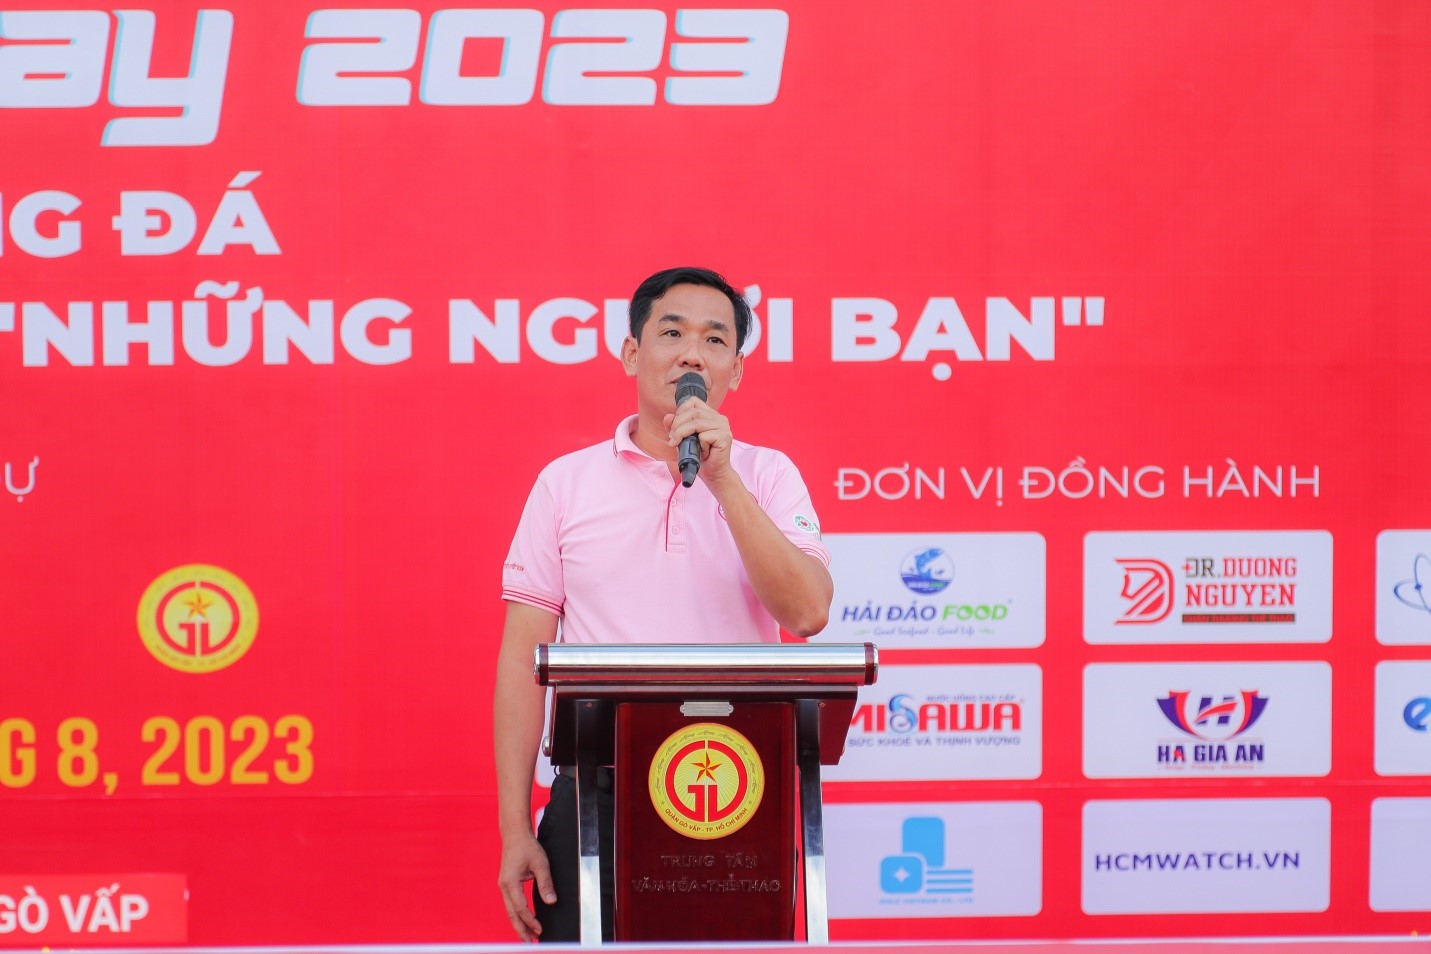 Ông Nguyễn Quốc Khang - Chủ tịch Hội liên hiệp thanh niên CP Việt Nam, Phó Tổng giám đốc Tập đoàn C.P Việt Nam chai sẻ tại ngày hội.